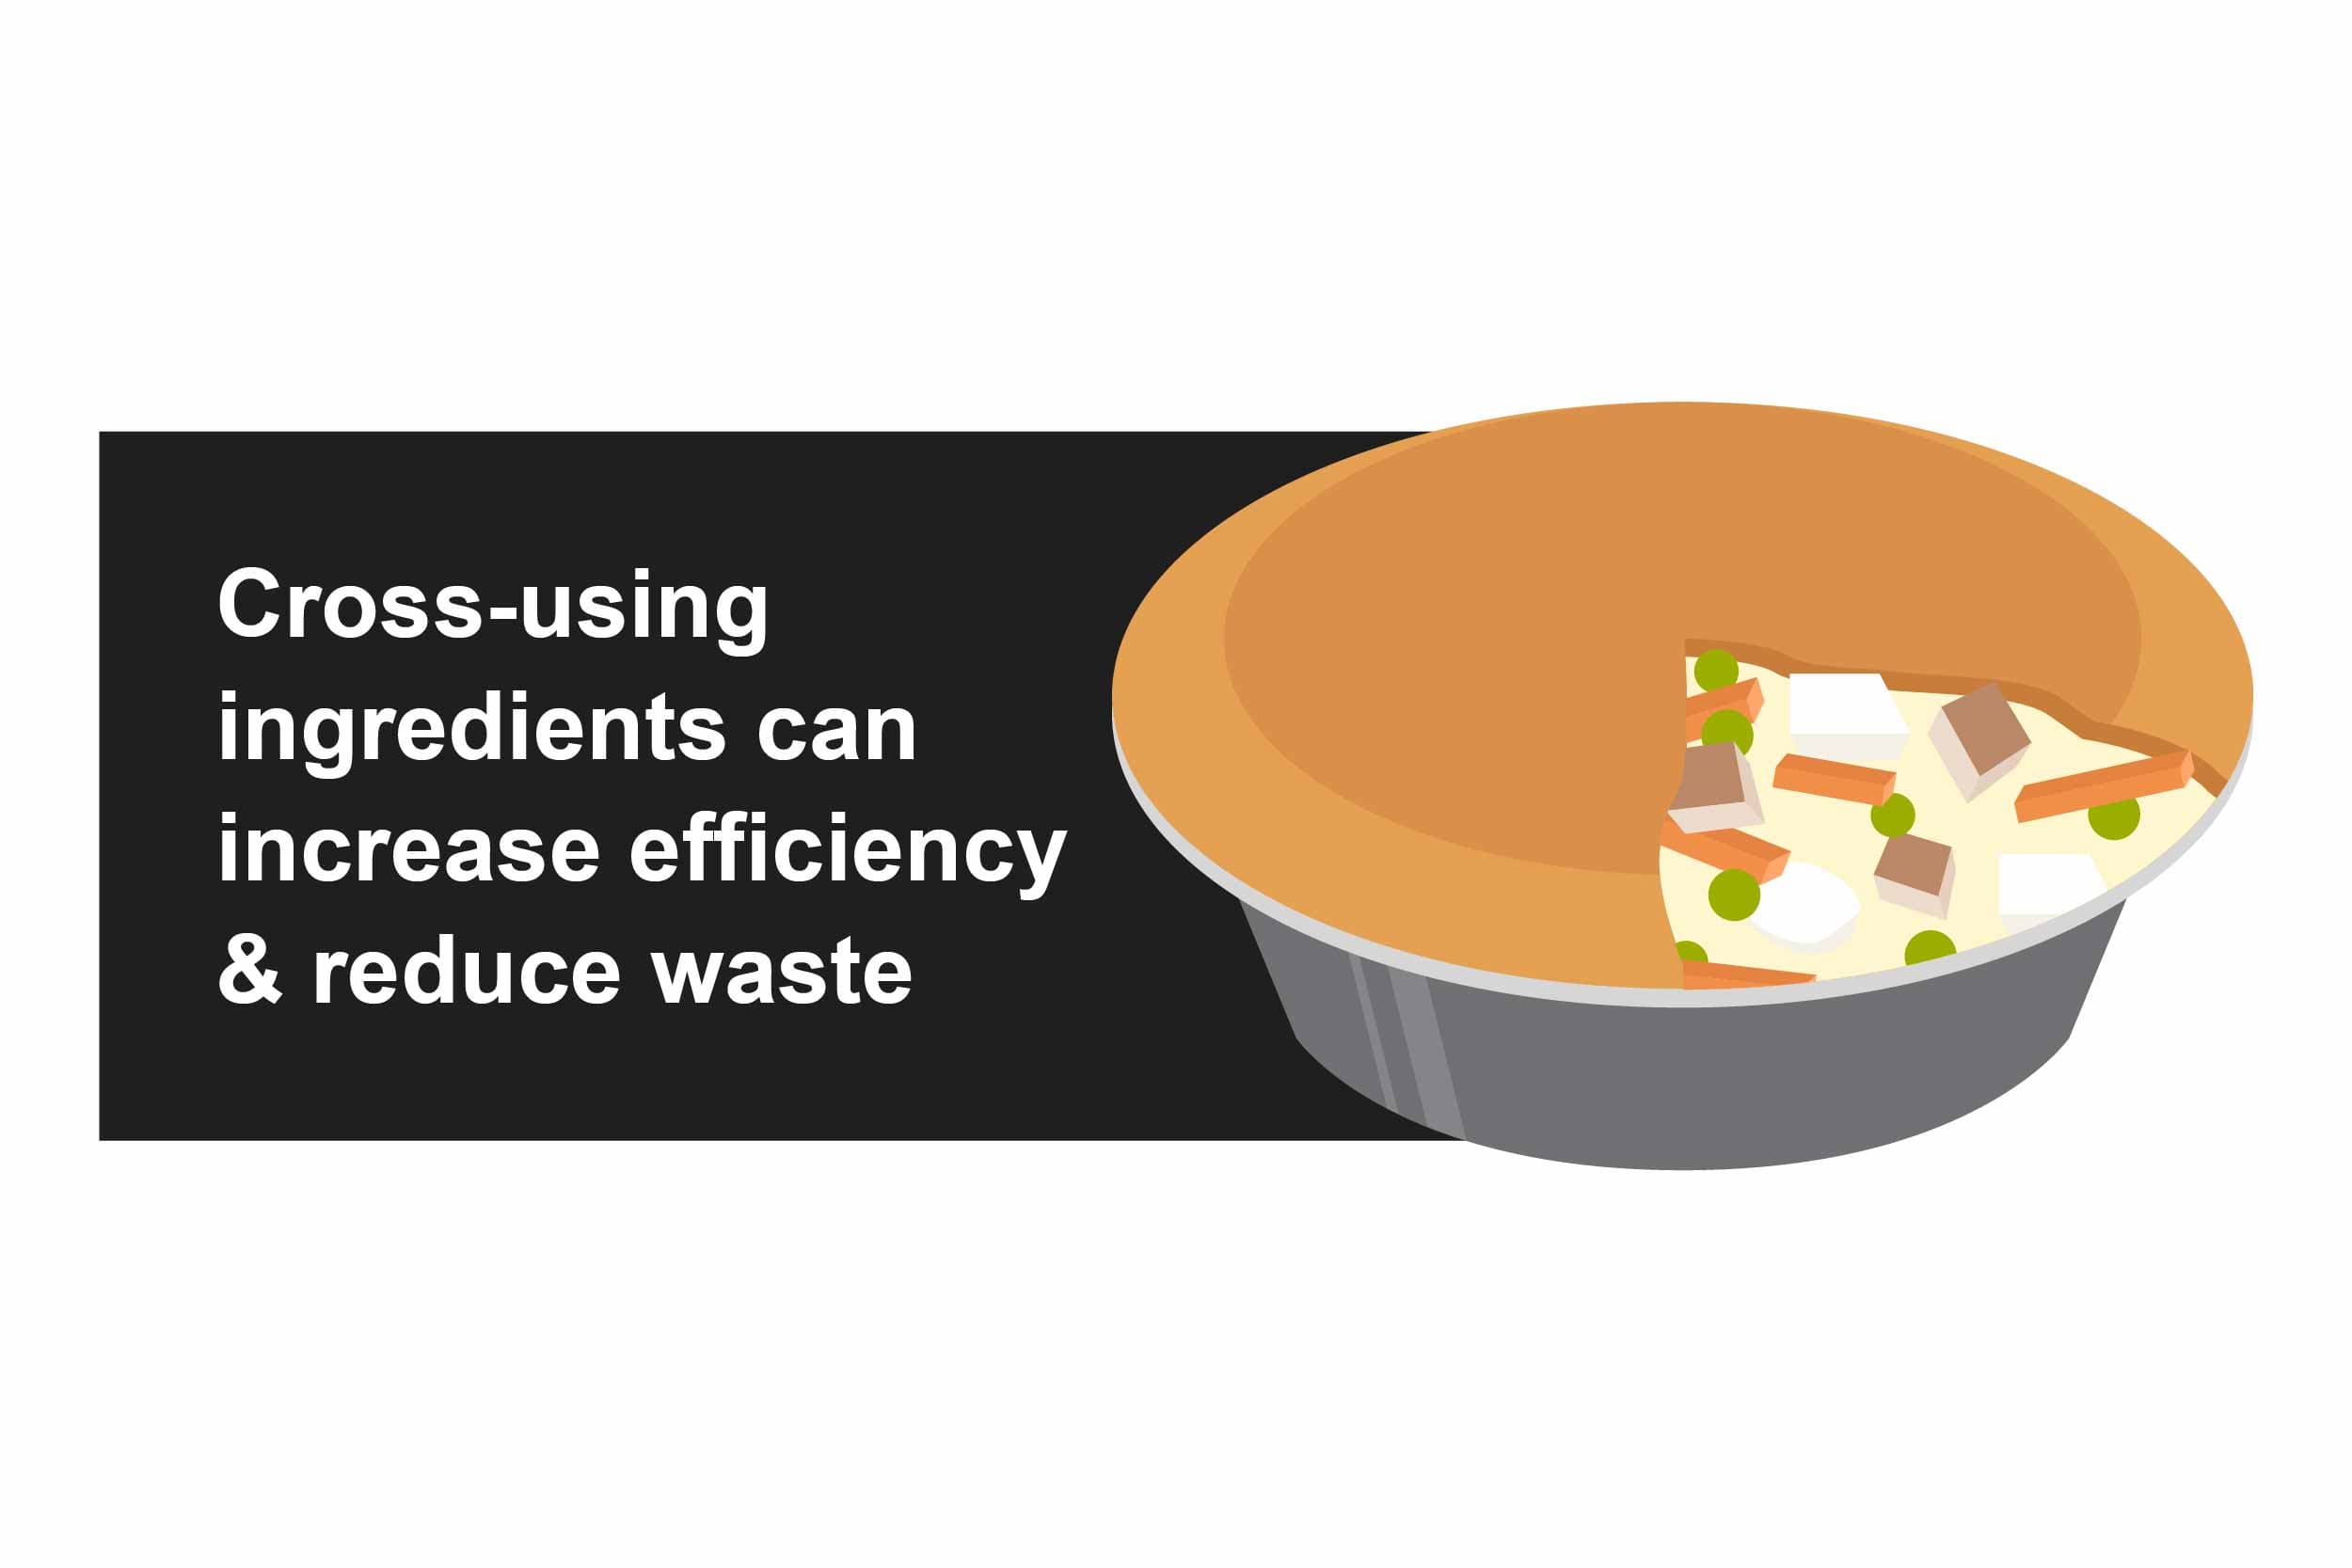 Cross-using ingredients can increase efficiency & reduce waste.